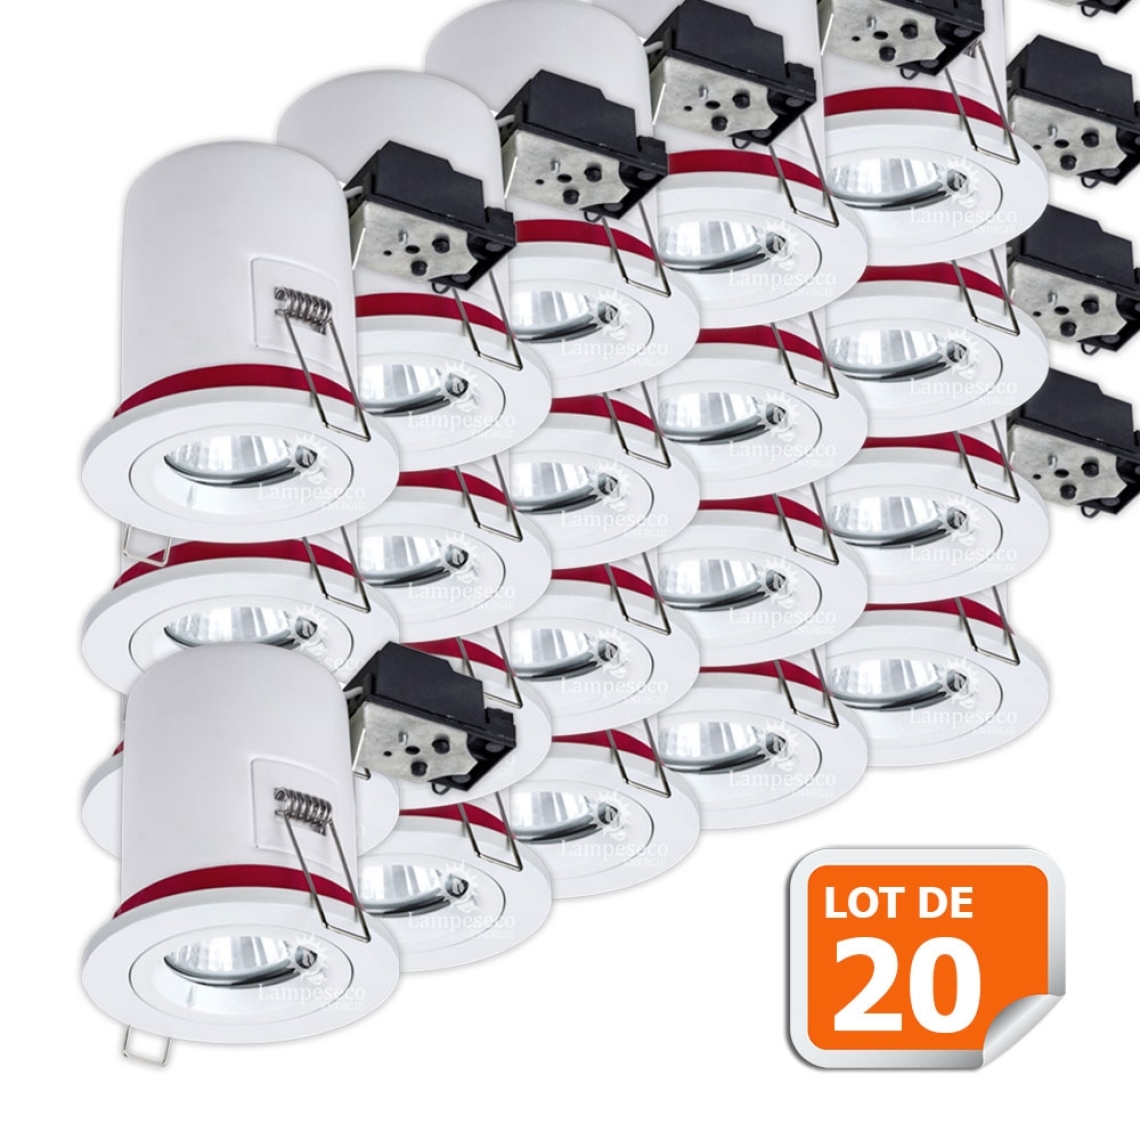 Lampesecoenergie - Lot de 20 Spot BBC Orientable diametre 100mm avec douille GU10 automatique ref. 8025 - Moulures et goulottes